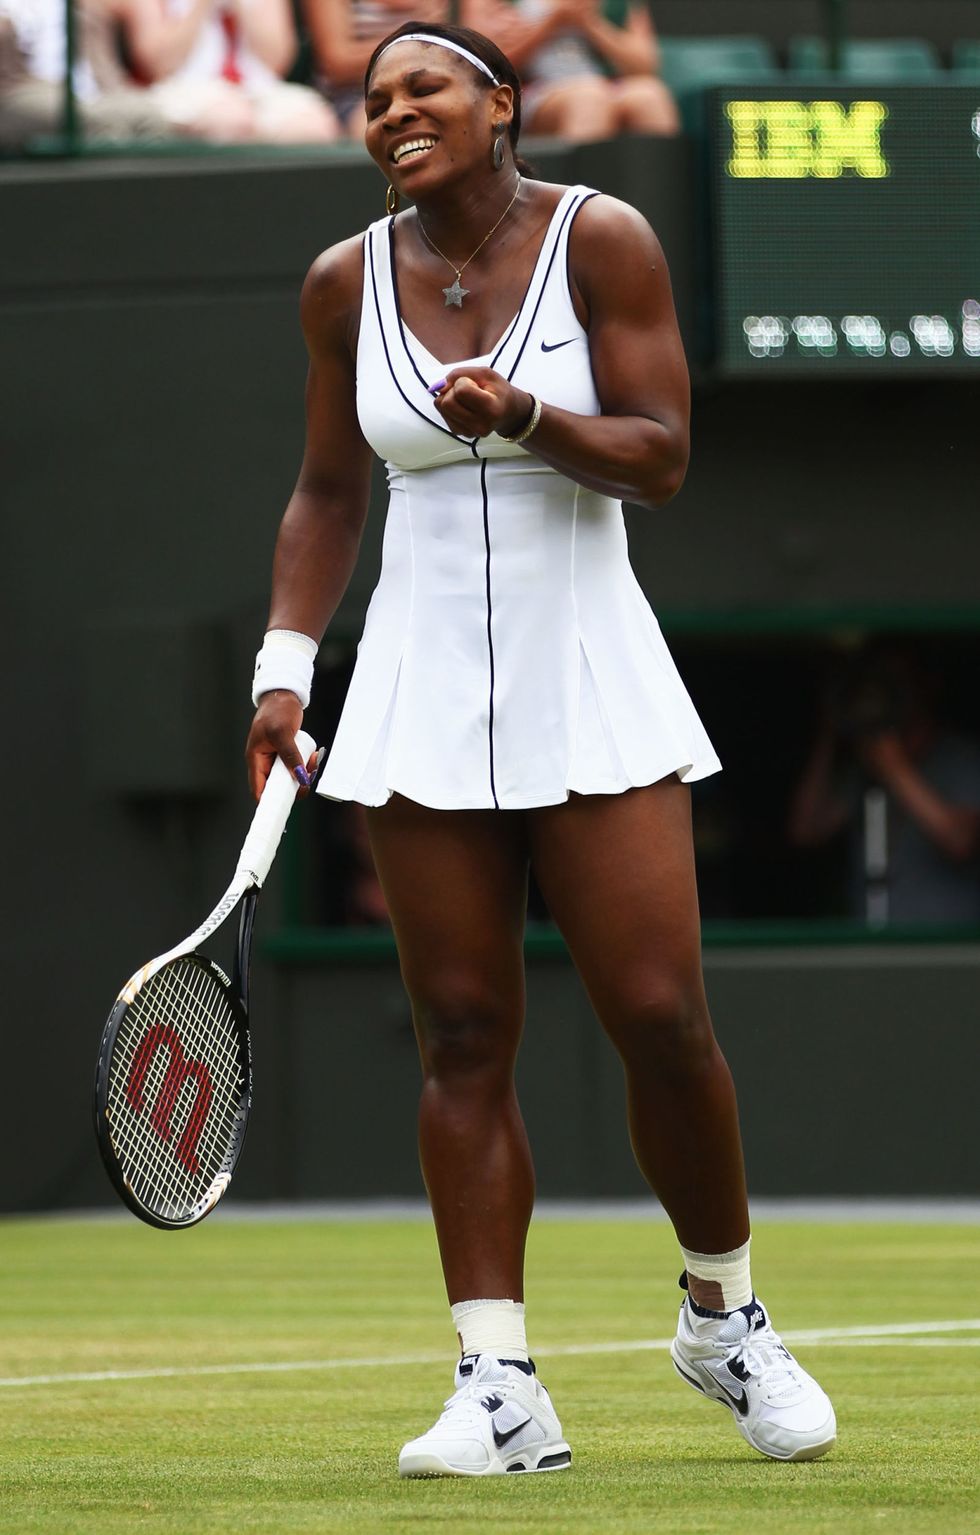 <p>現代的網球裙裝在剪裁上做了更俐落的修飾，美國頂尖網球選手Serena Williams除了精湛球技，每每出賽時的裝束也成了場上話題；全白的連身裙以黑色線條勾勒，黑白搭配時髦之餘更顯簡斂、專業。<span class="redactor-invisible-space" data-verified="redactor" data-redactor-tag="span" data-redactor-class="redactor-invisible-space"></span></p>